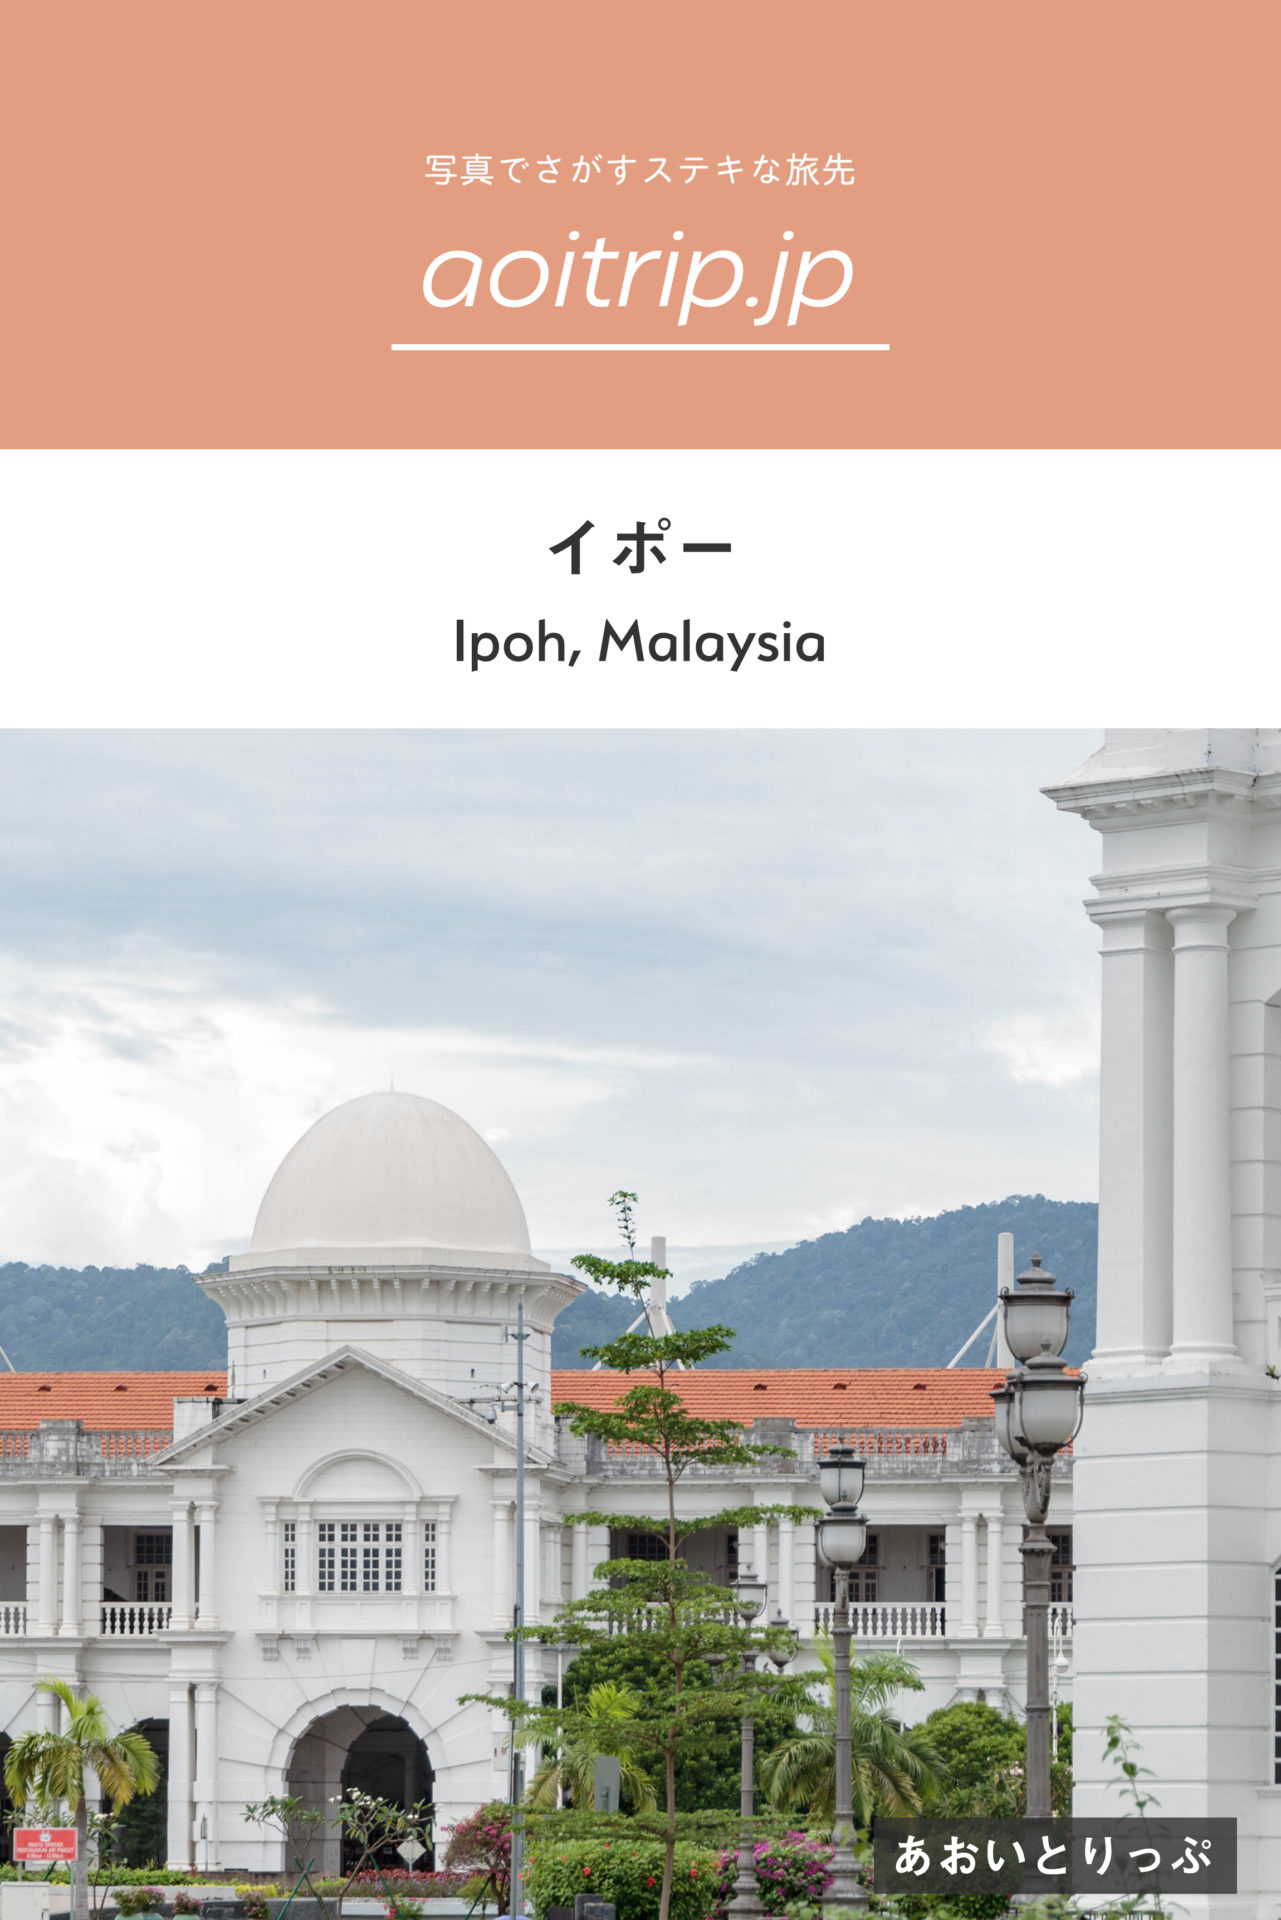 マレーシア・イポー コロニアル様式の駅舎が美しい美食の町 Ipoh, Malaysia